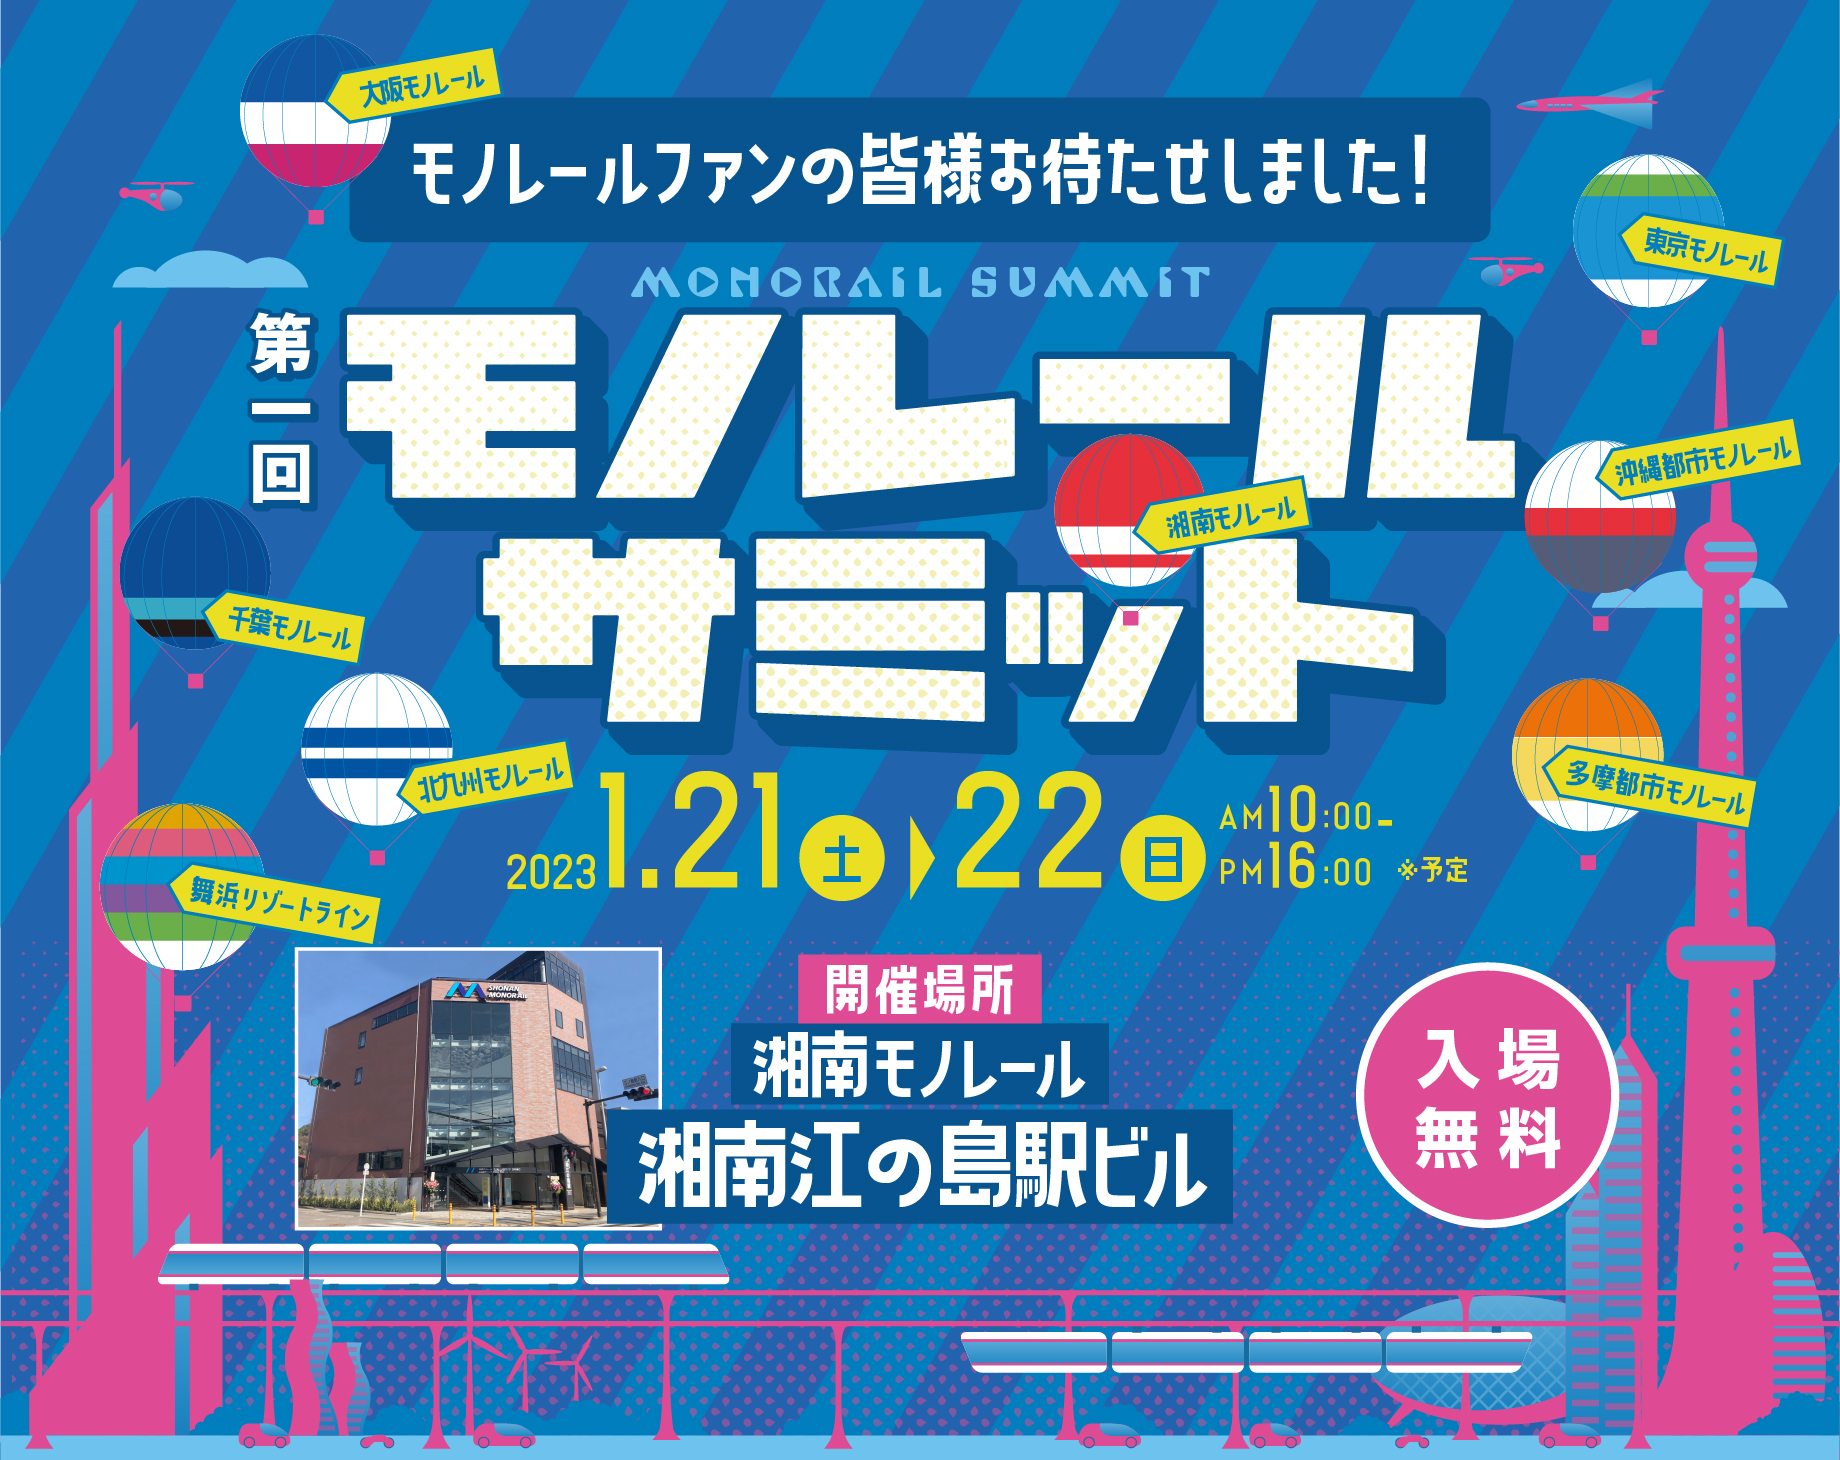 2023年1月21日（土）、22日（日）『第一回モノレールサミット』@ 湘南モノレール 湘南江の島駅開催